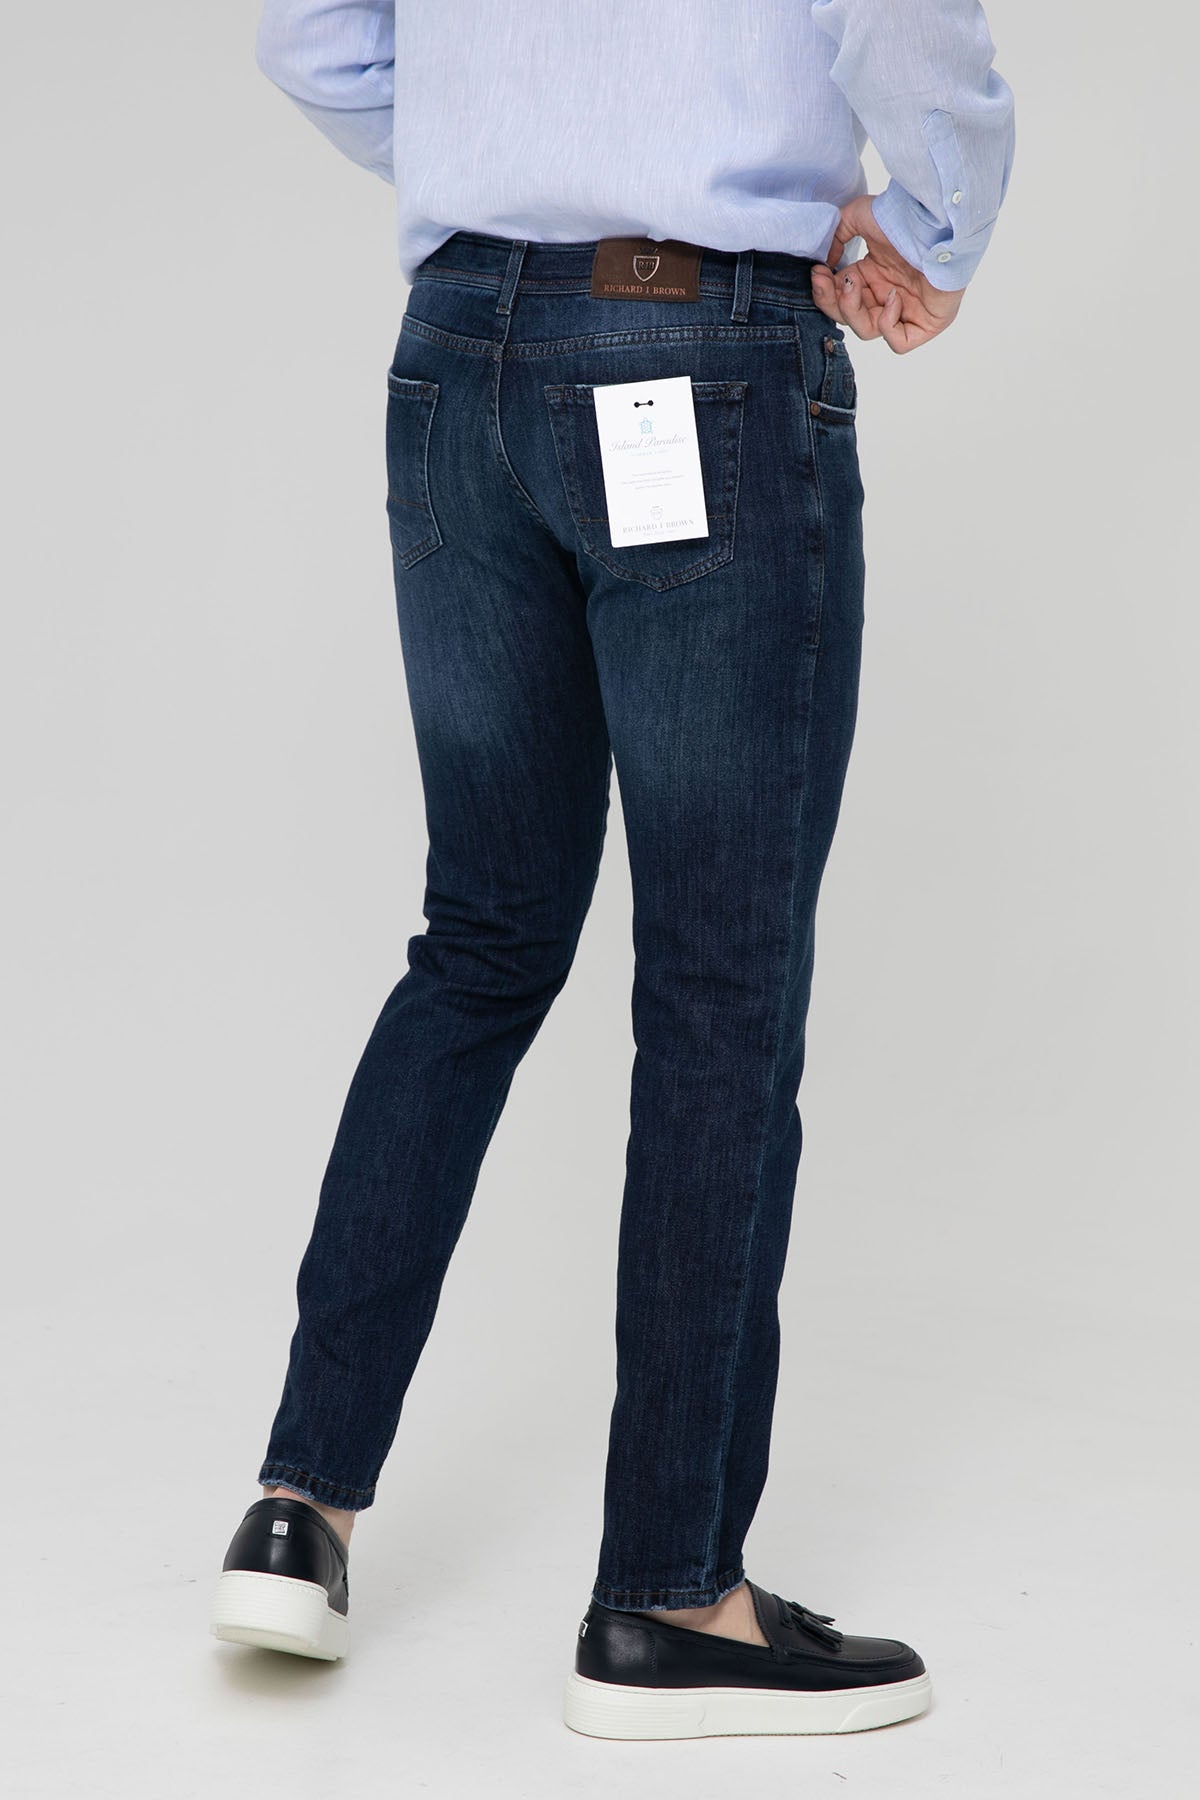 Richard J. Brown Tokyo Ketenli Slim Fit Jeans-Libas Trendy Fashion Store